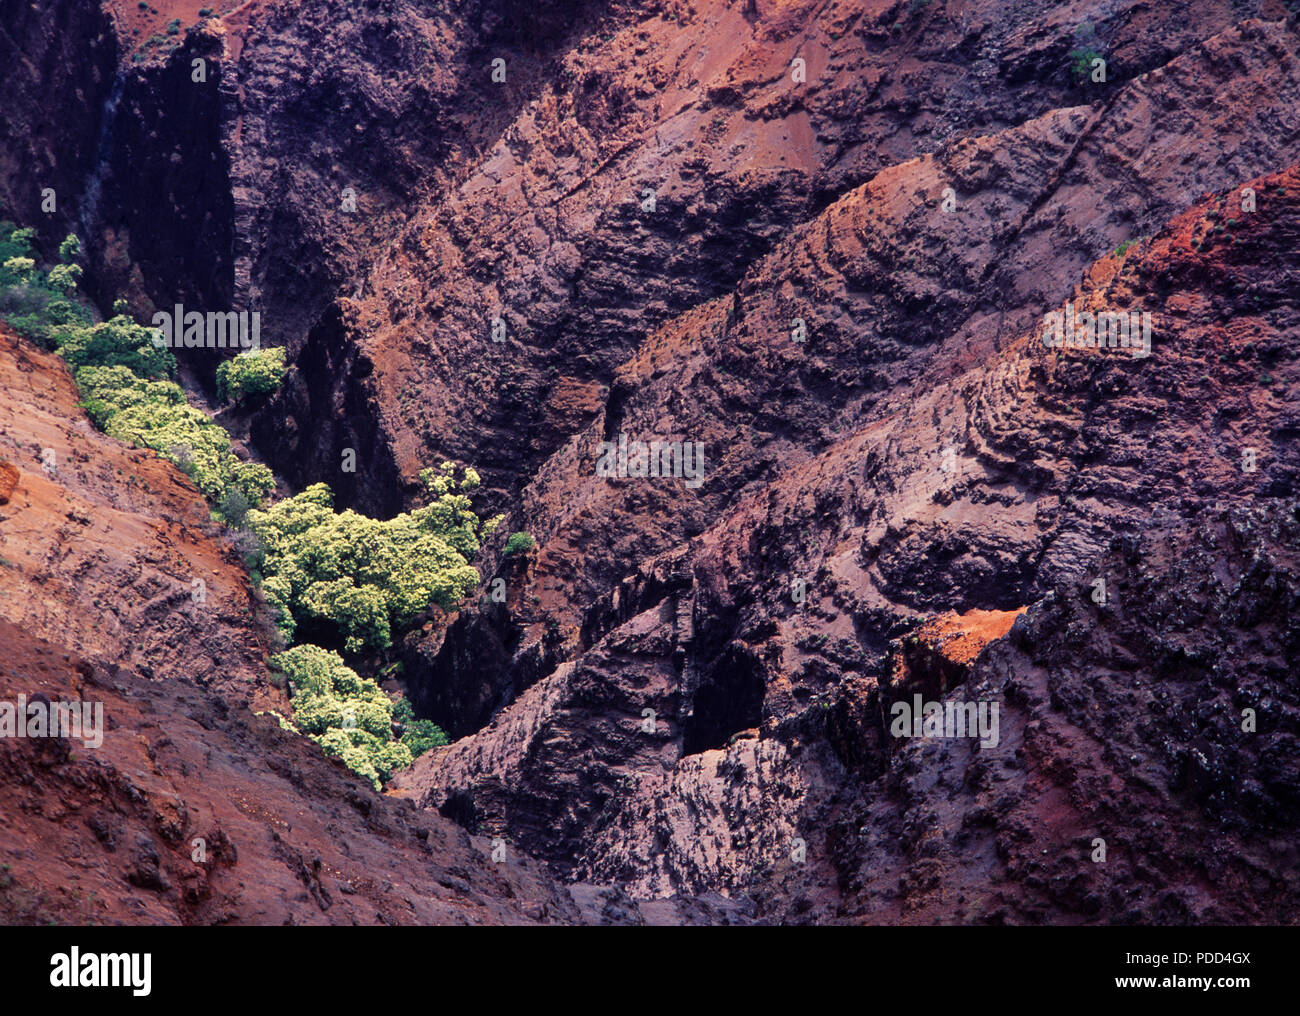 El Cañón de Waimea mostrando capas de basalto volcánico erosionado desde hace millones de años, Kauai, Hawai. Foto de stock